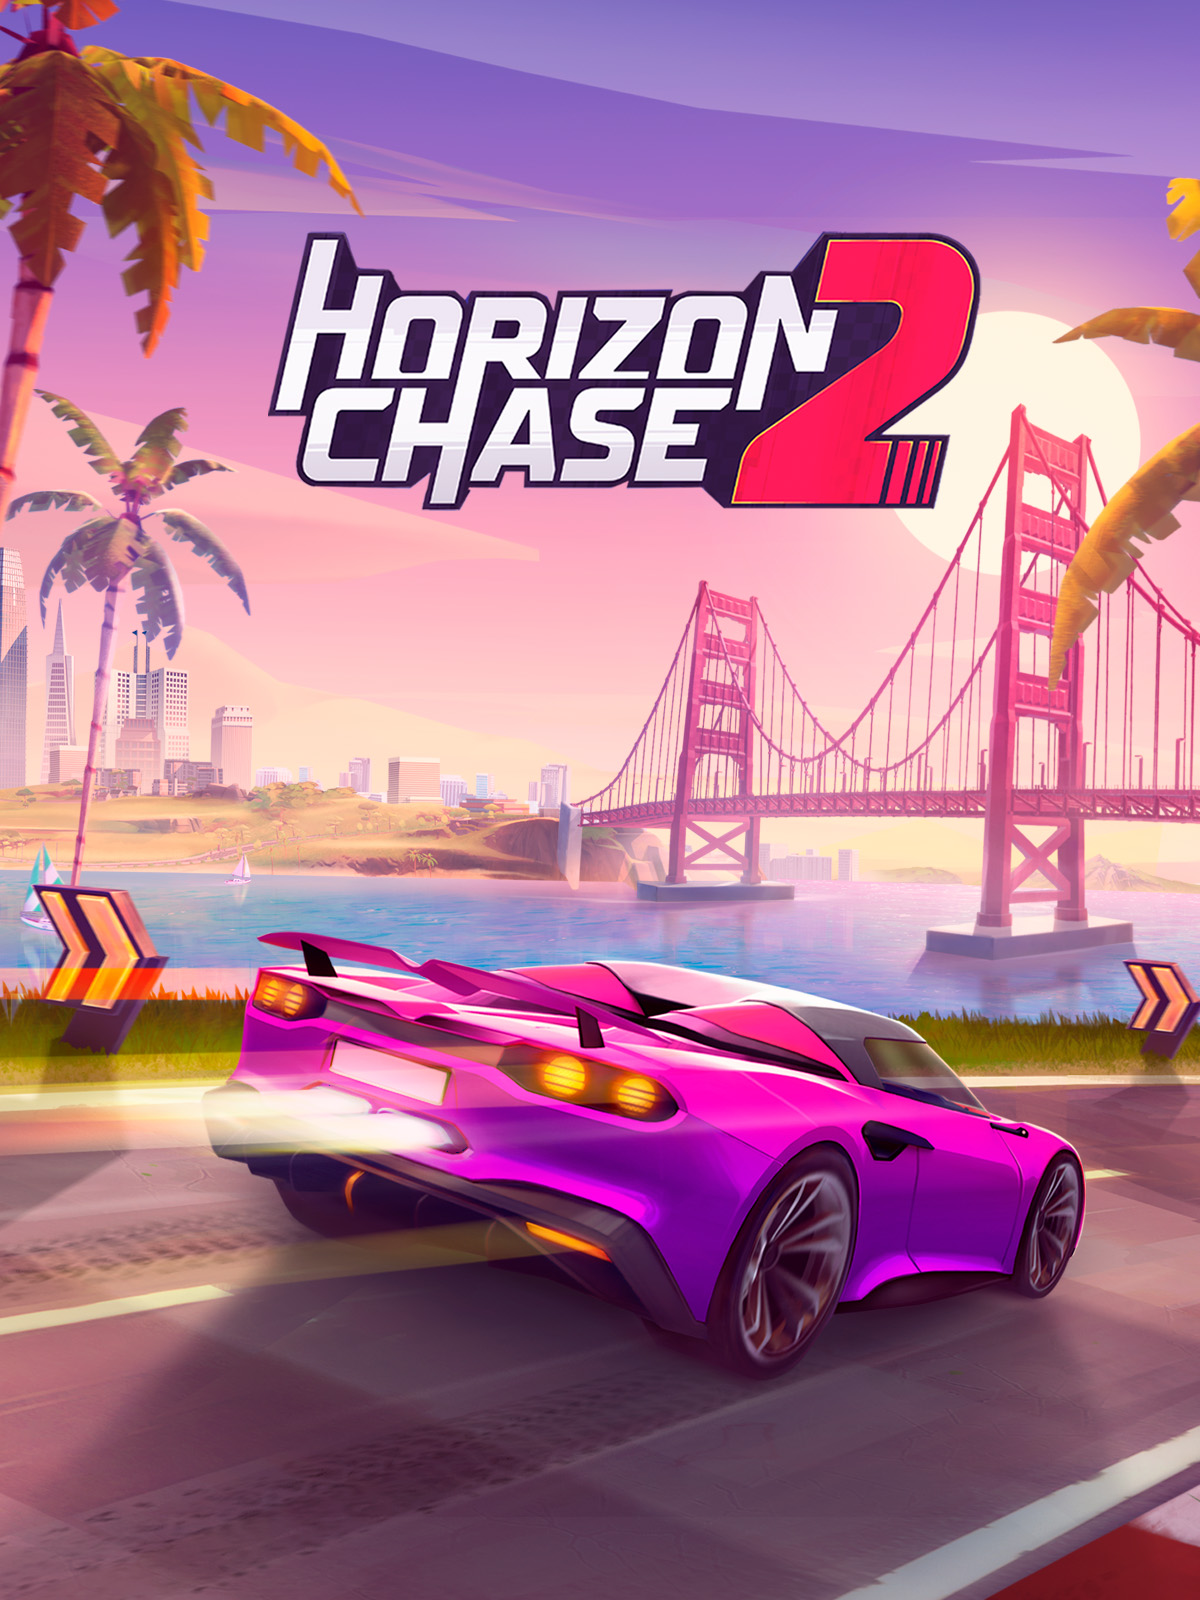 Jogamos Horizon Chase 2 (Multi) e demos uma volta ao mundo em velocidade  máxima